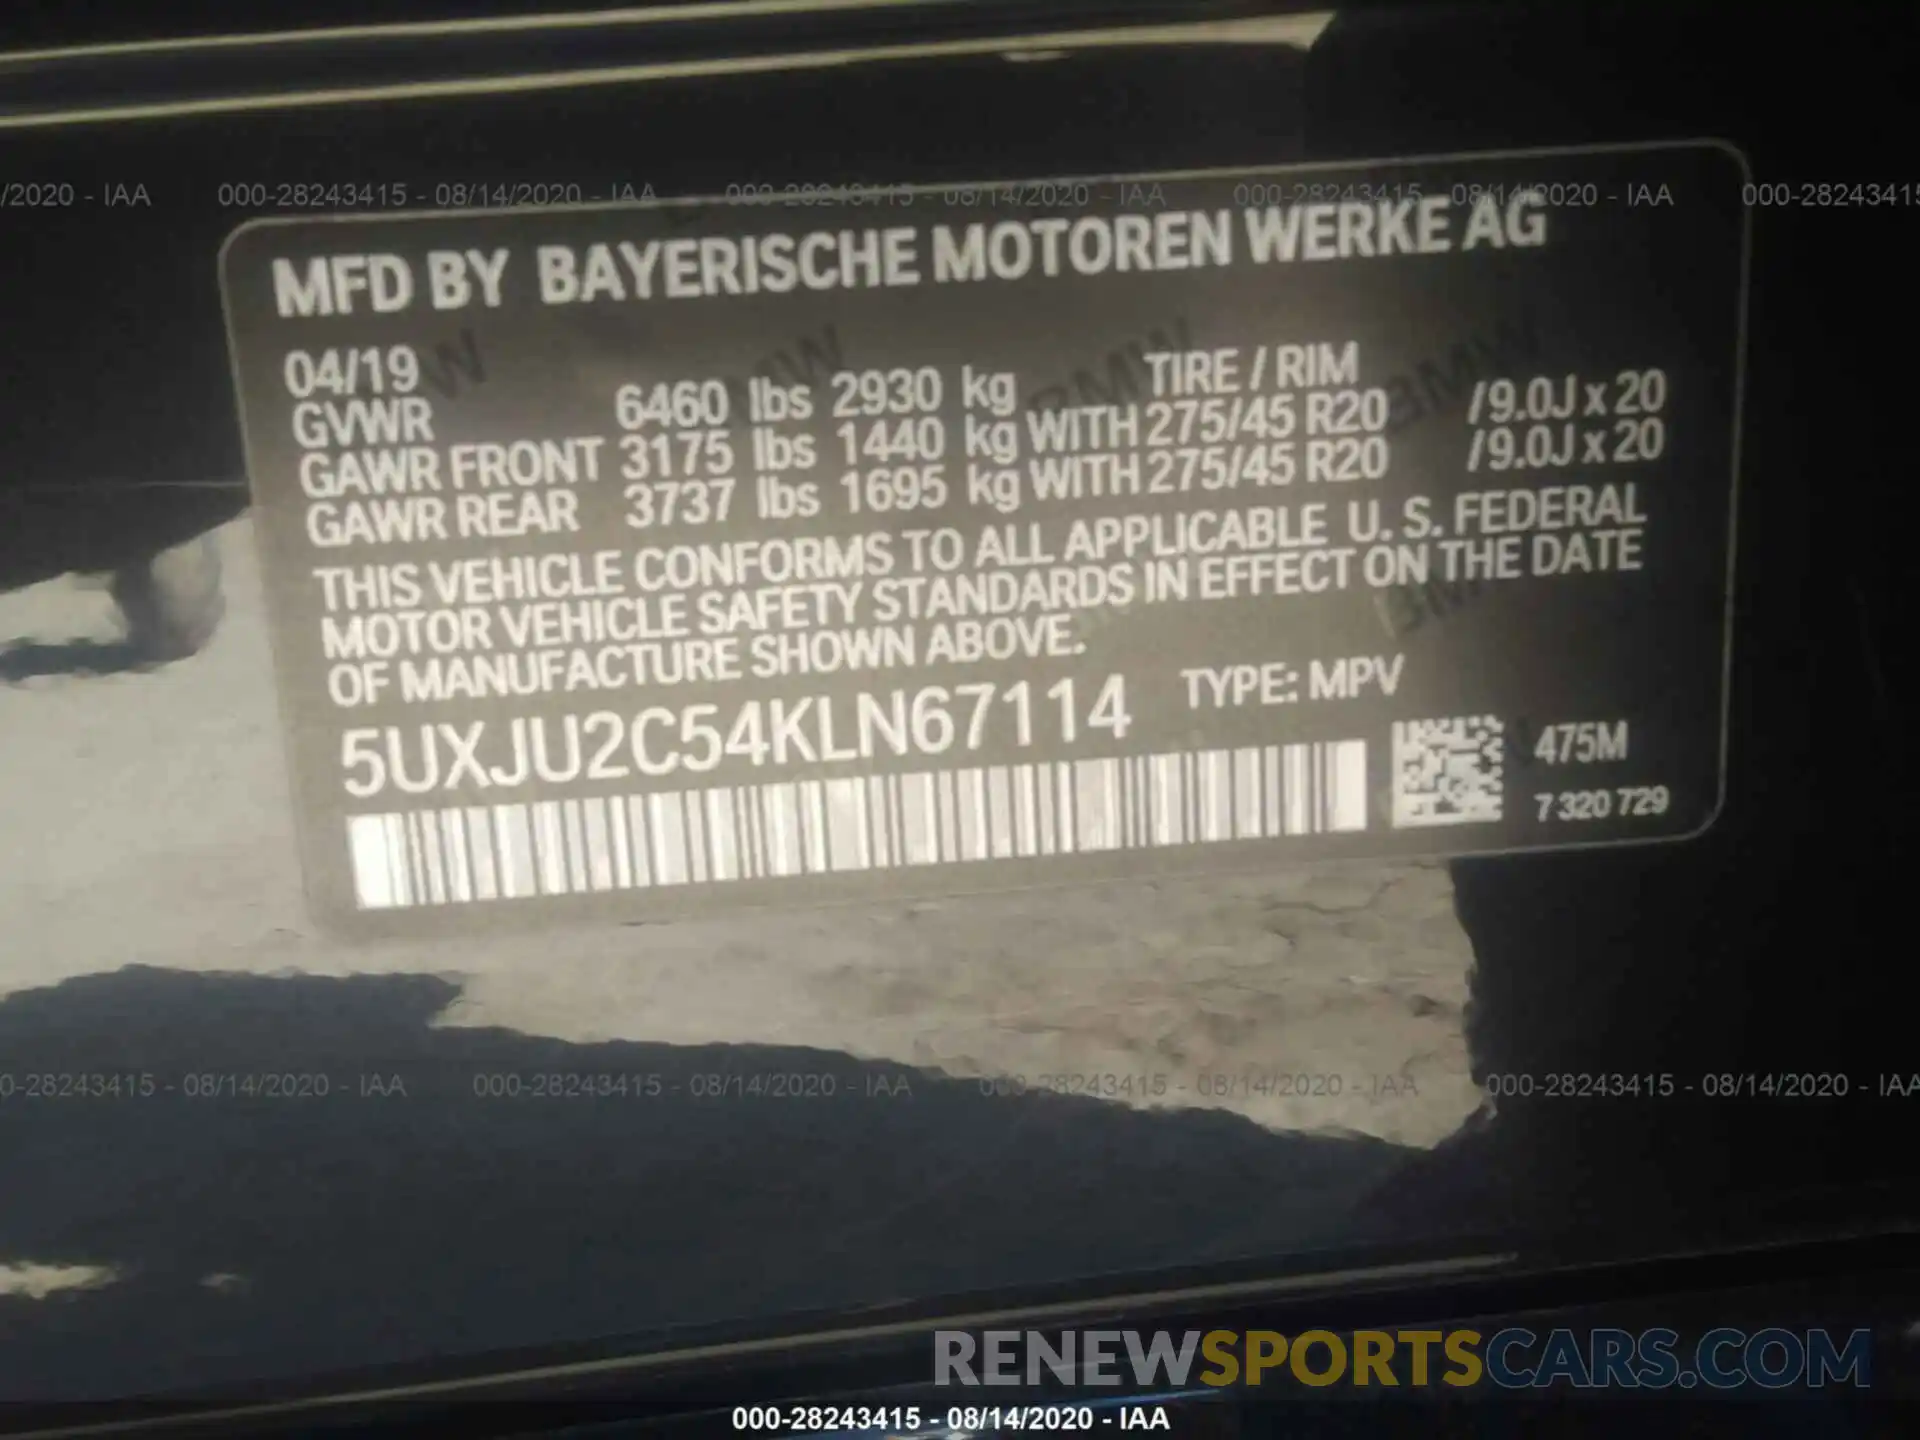 9 Photograph of a damaged car 5UXJU2C54KLN67114 BMW X5 2019